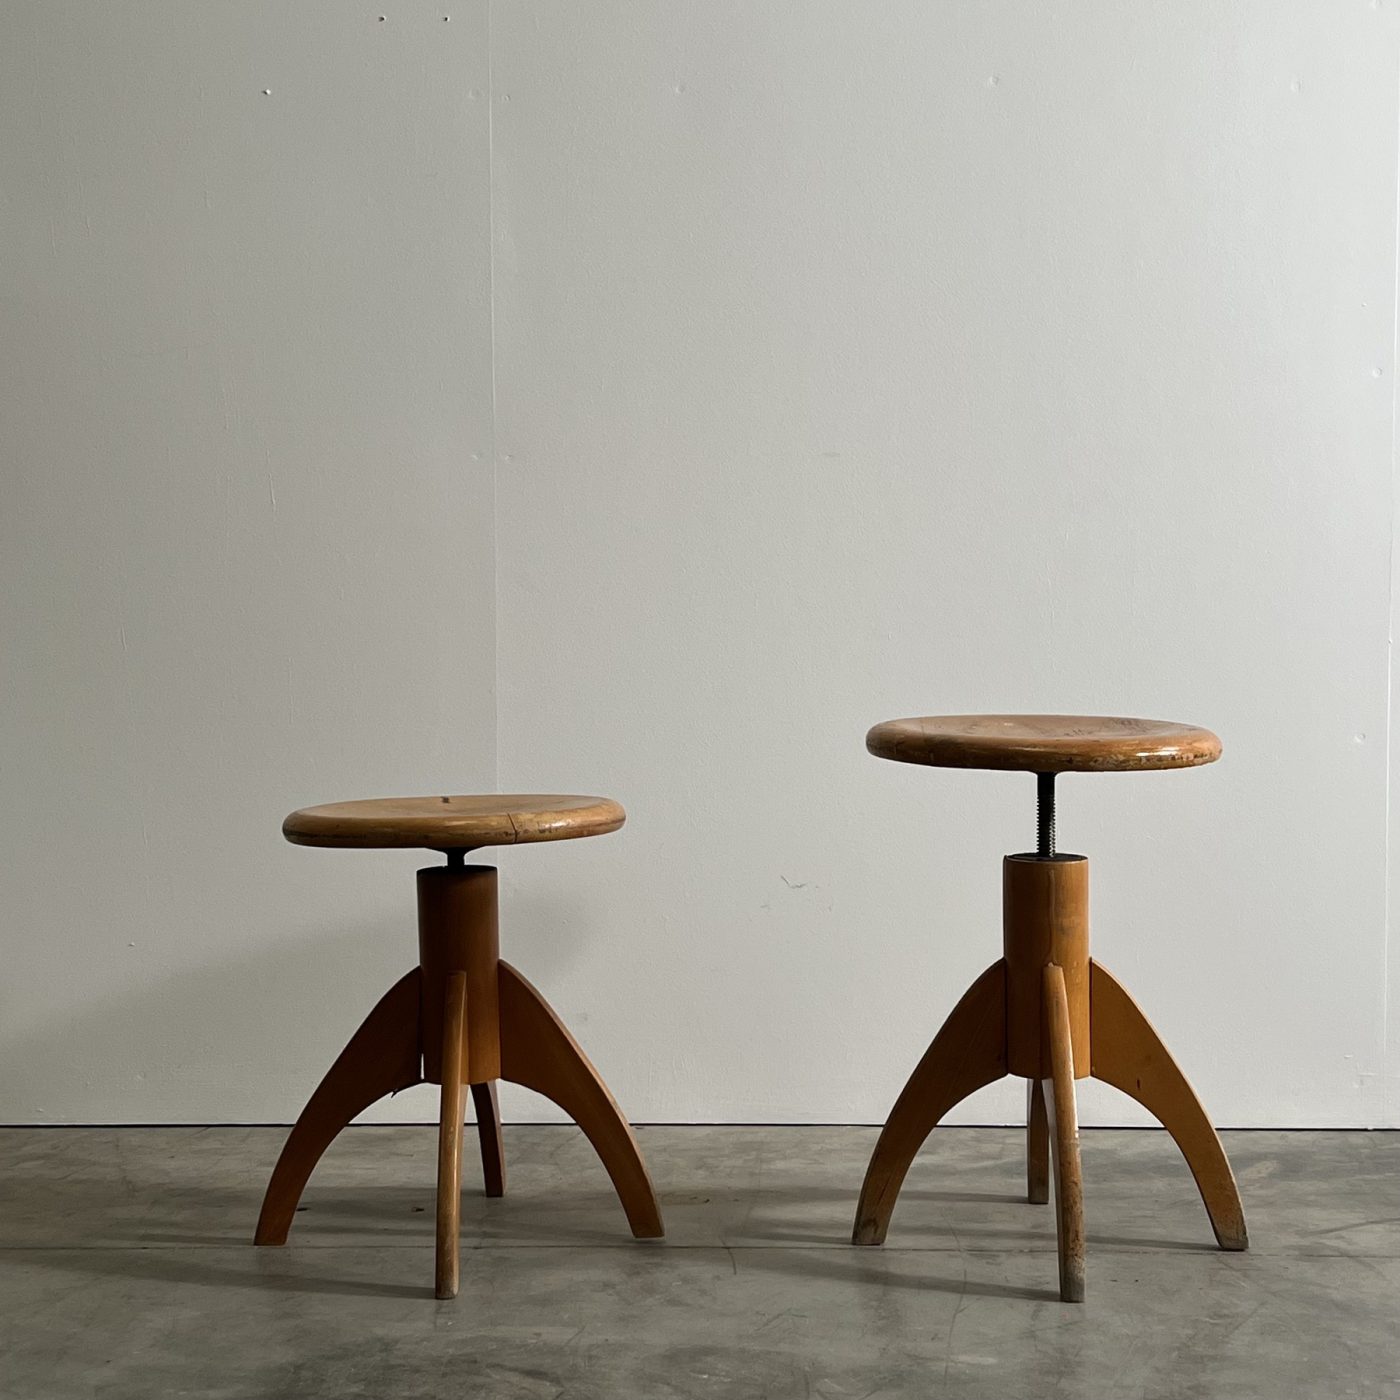 objet-vagabond-wooden-stools0002